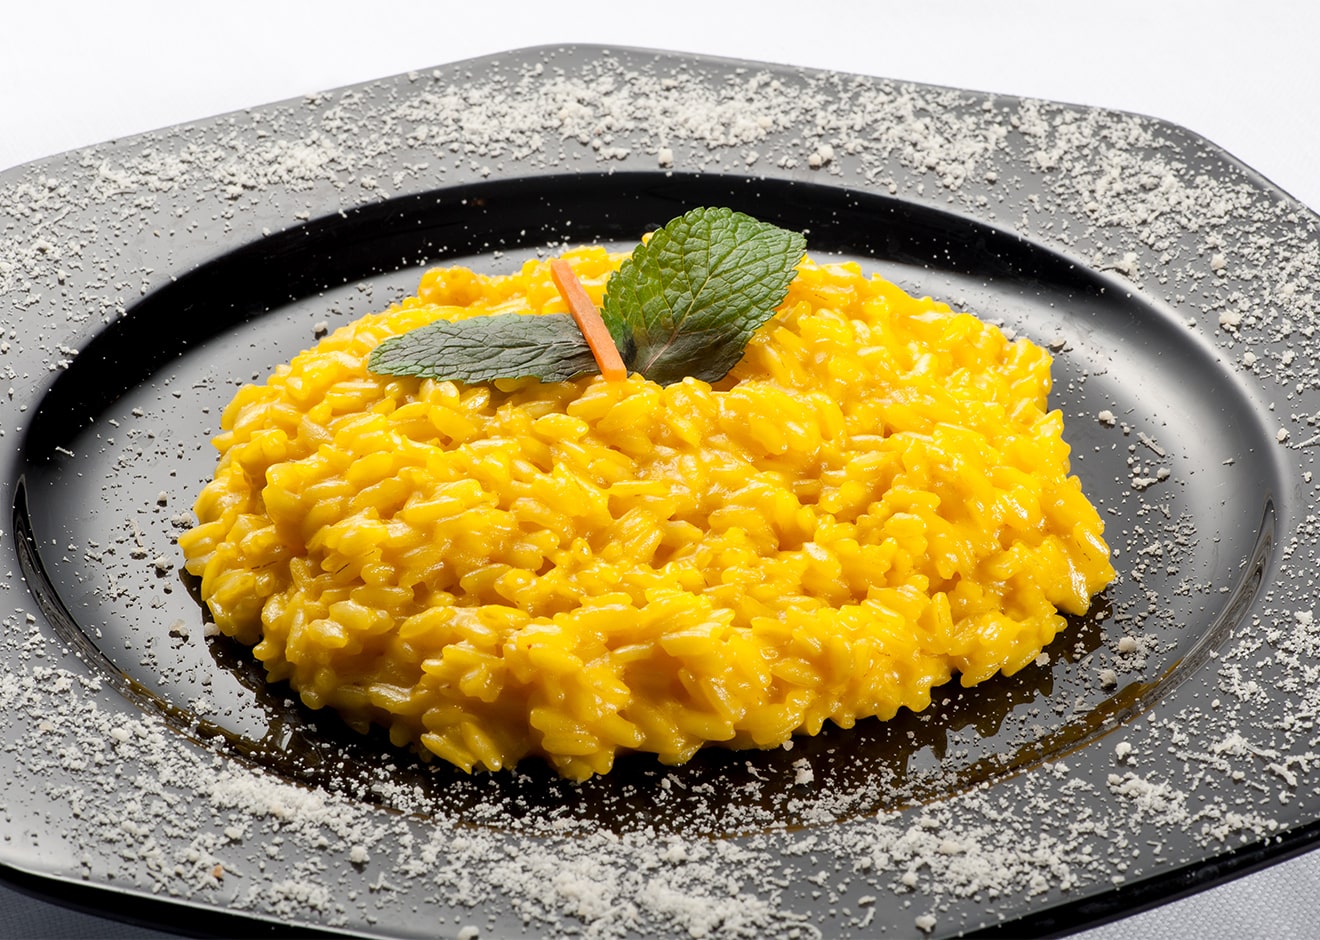 milanese saffron risotto in the plate